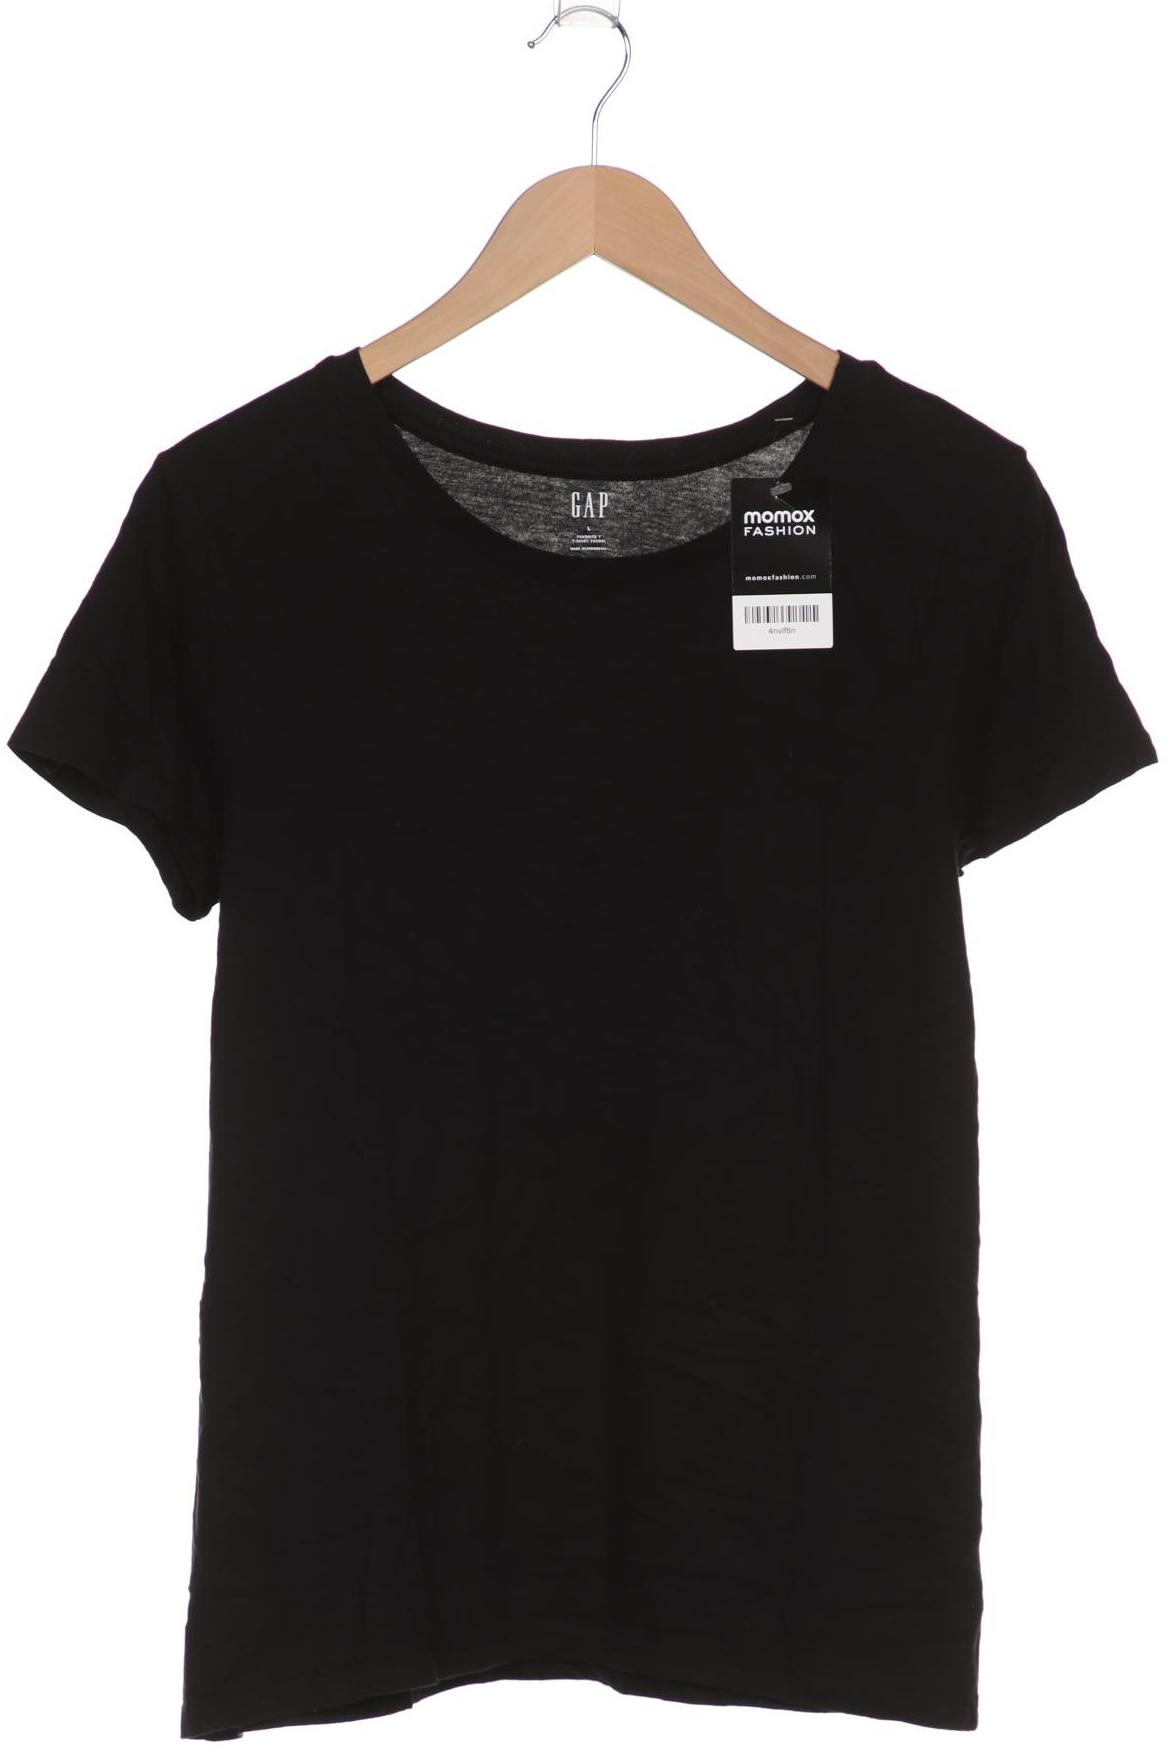 GAP Damen T-Shirt, schwarz von GAP